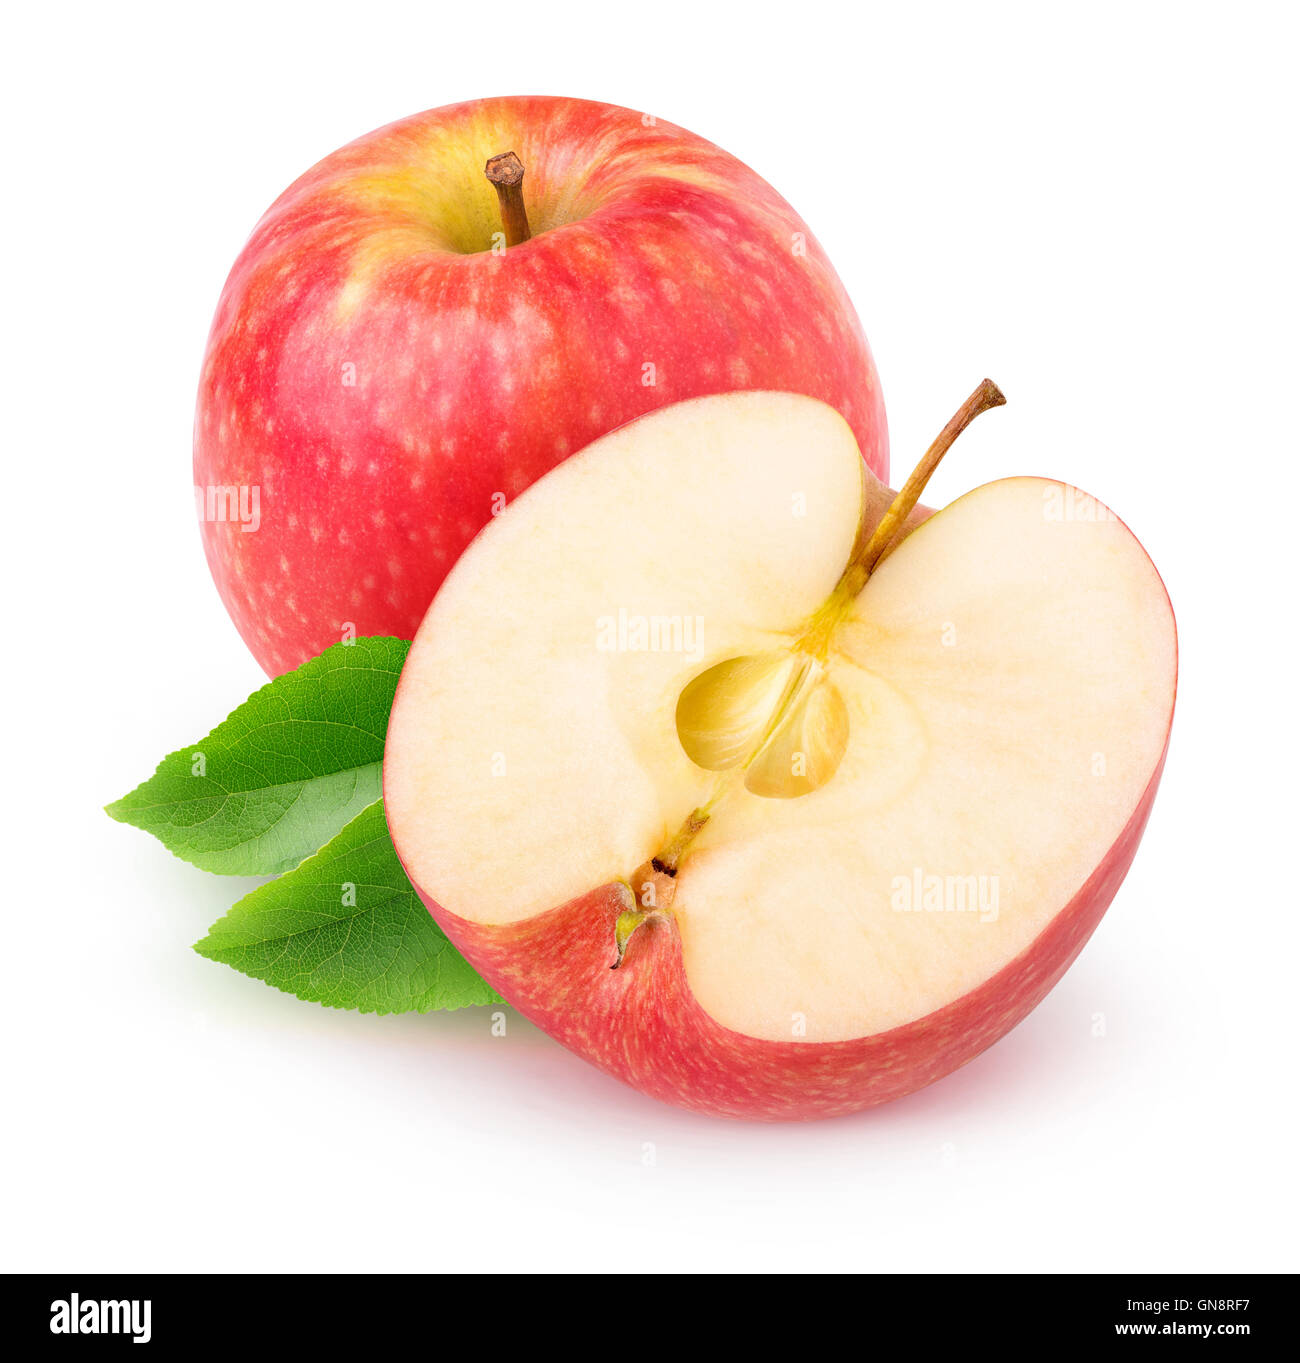 Apple isolés. Couper les fruits pomme rouge isolé sur fond blanc avec clipping path Banque D'Images